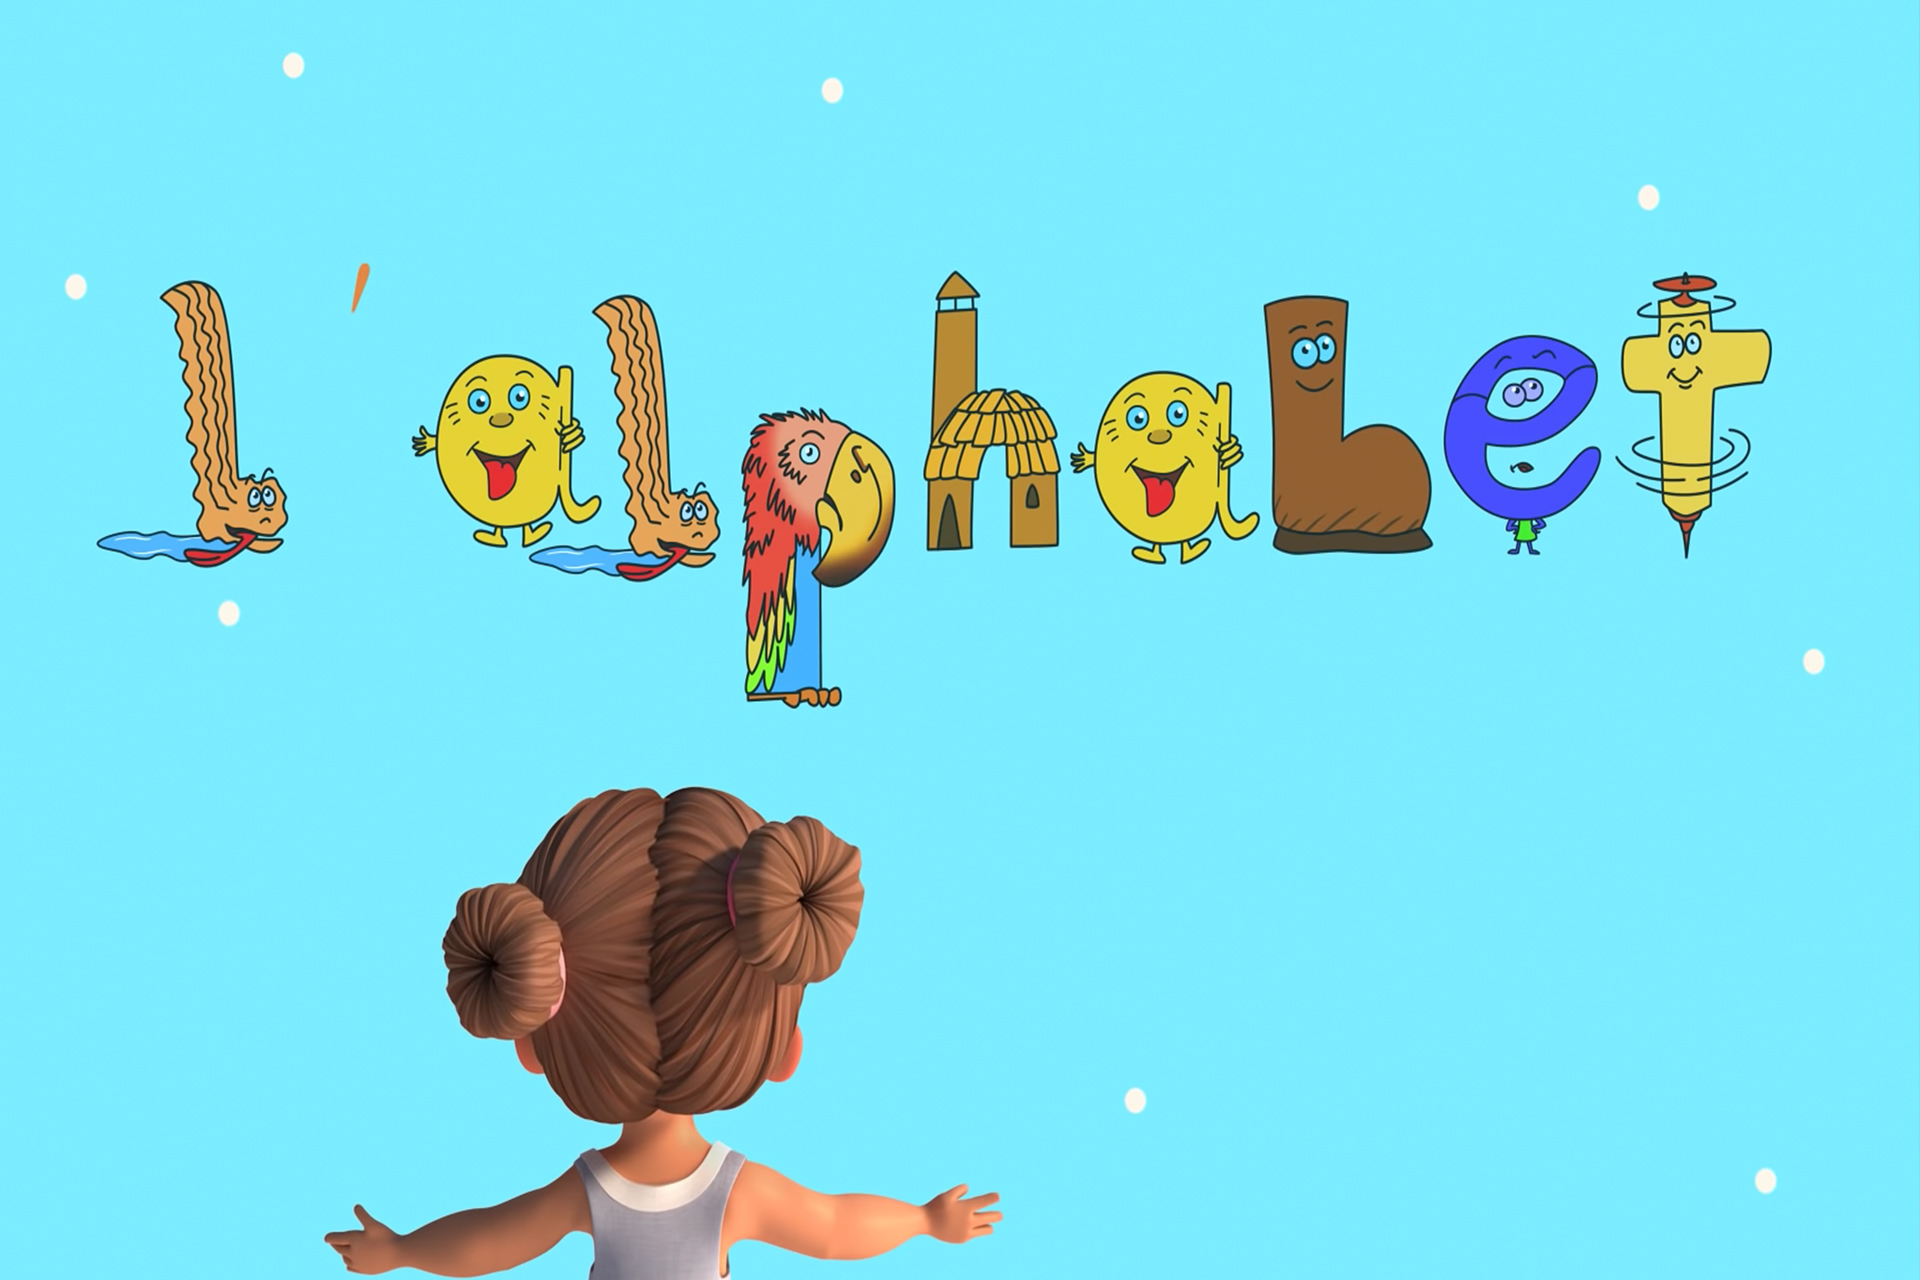 Vidéo : Apprendre l'alphabet avec les Alphas - ikukids